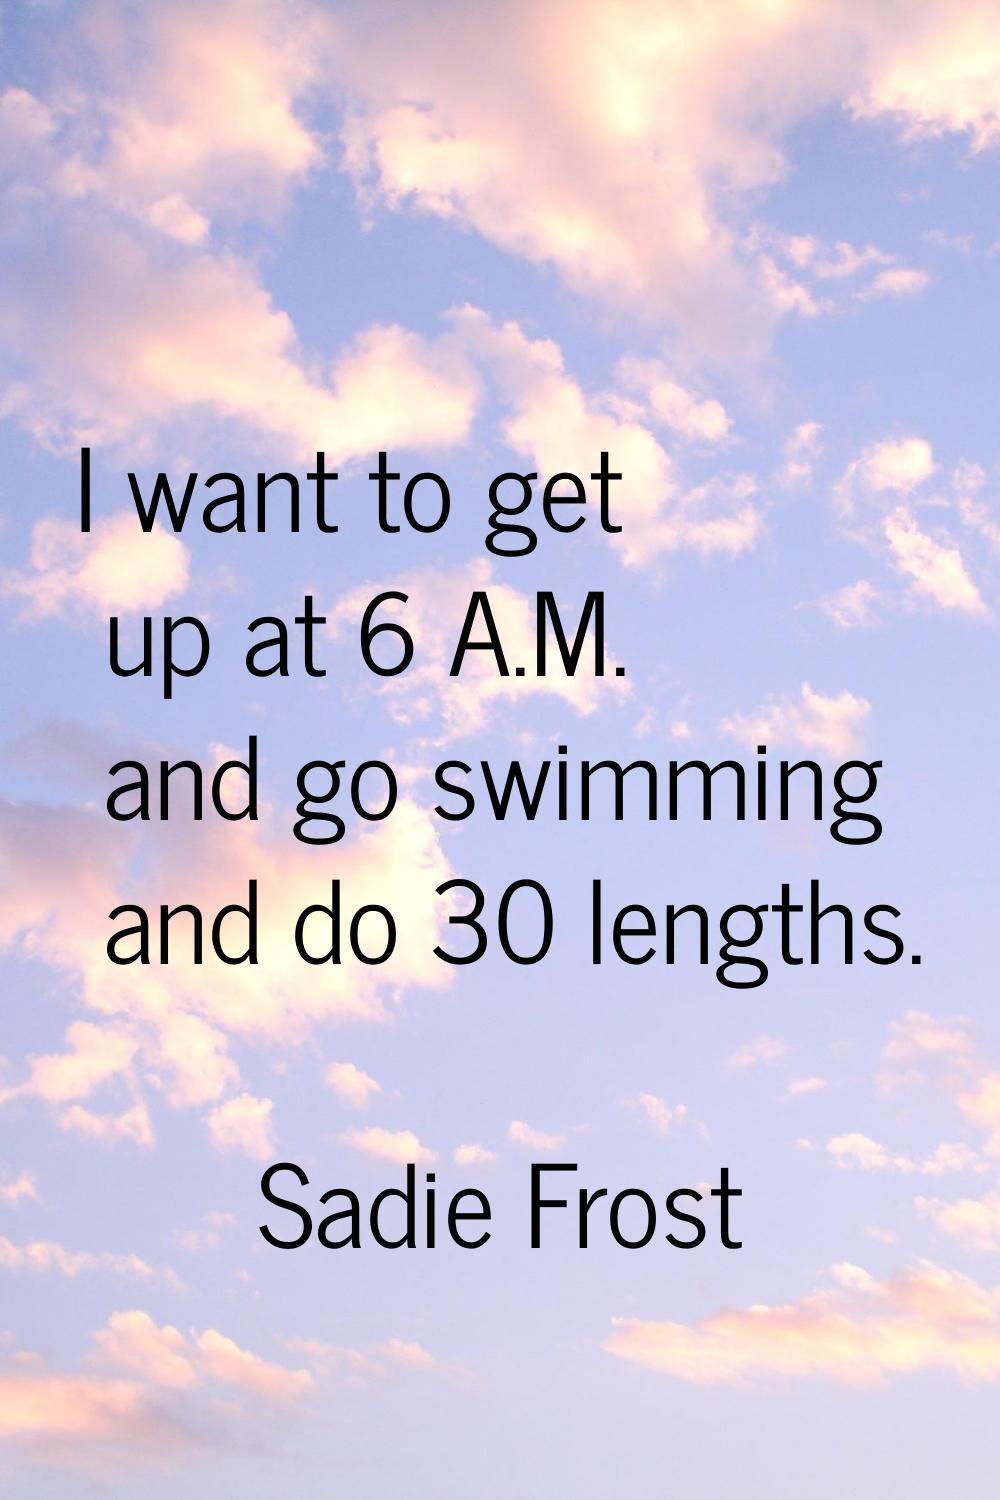 I want to get up at 6 A.M. and go swimming and do 30 lengths.